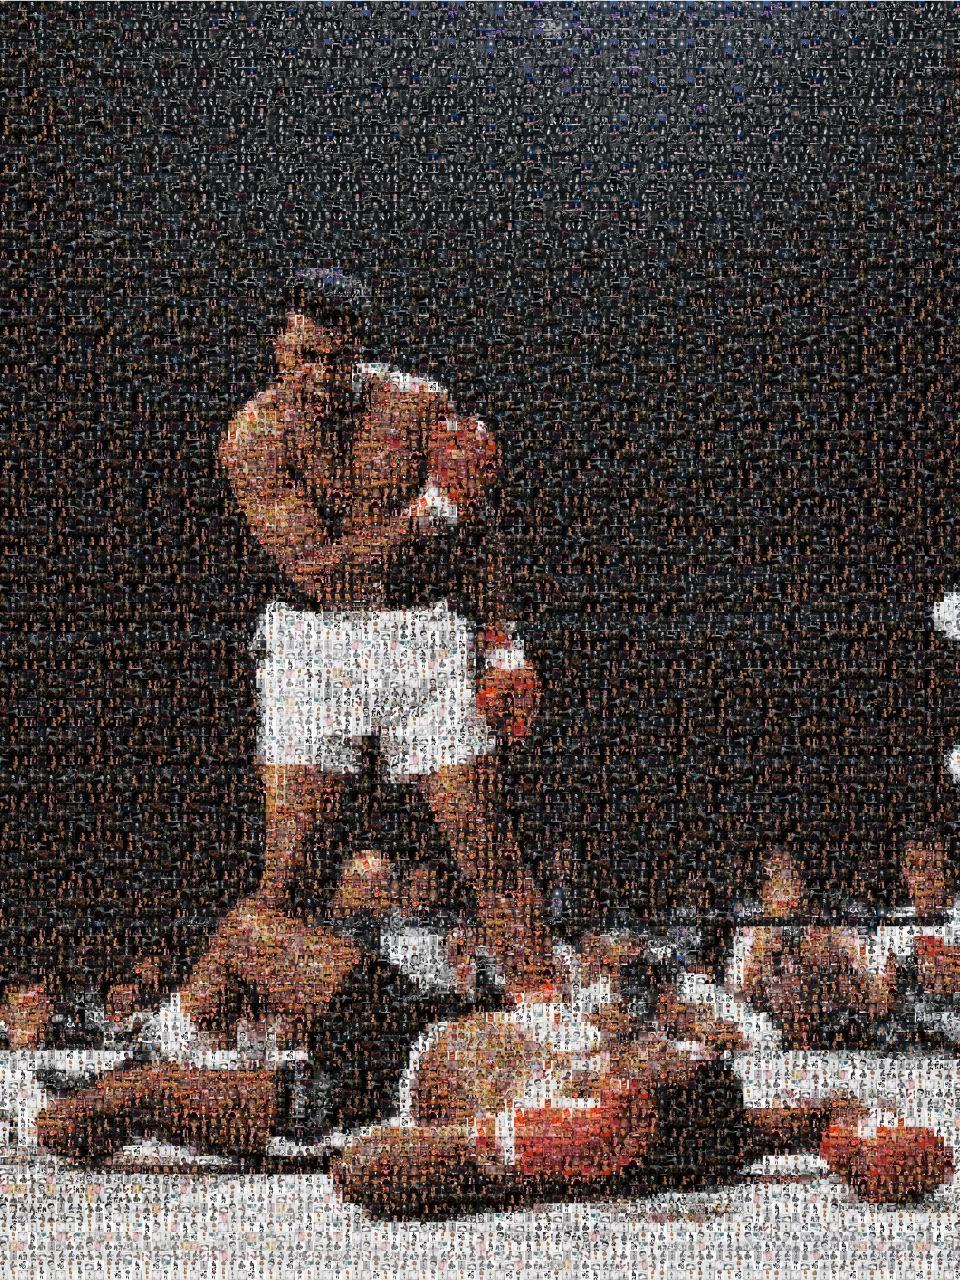 Muhammad Ali-Porträt 36x48 von Ali  Fotomosaik-Fotografie Pop-Art  Vorzeichenlos